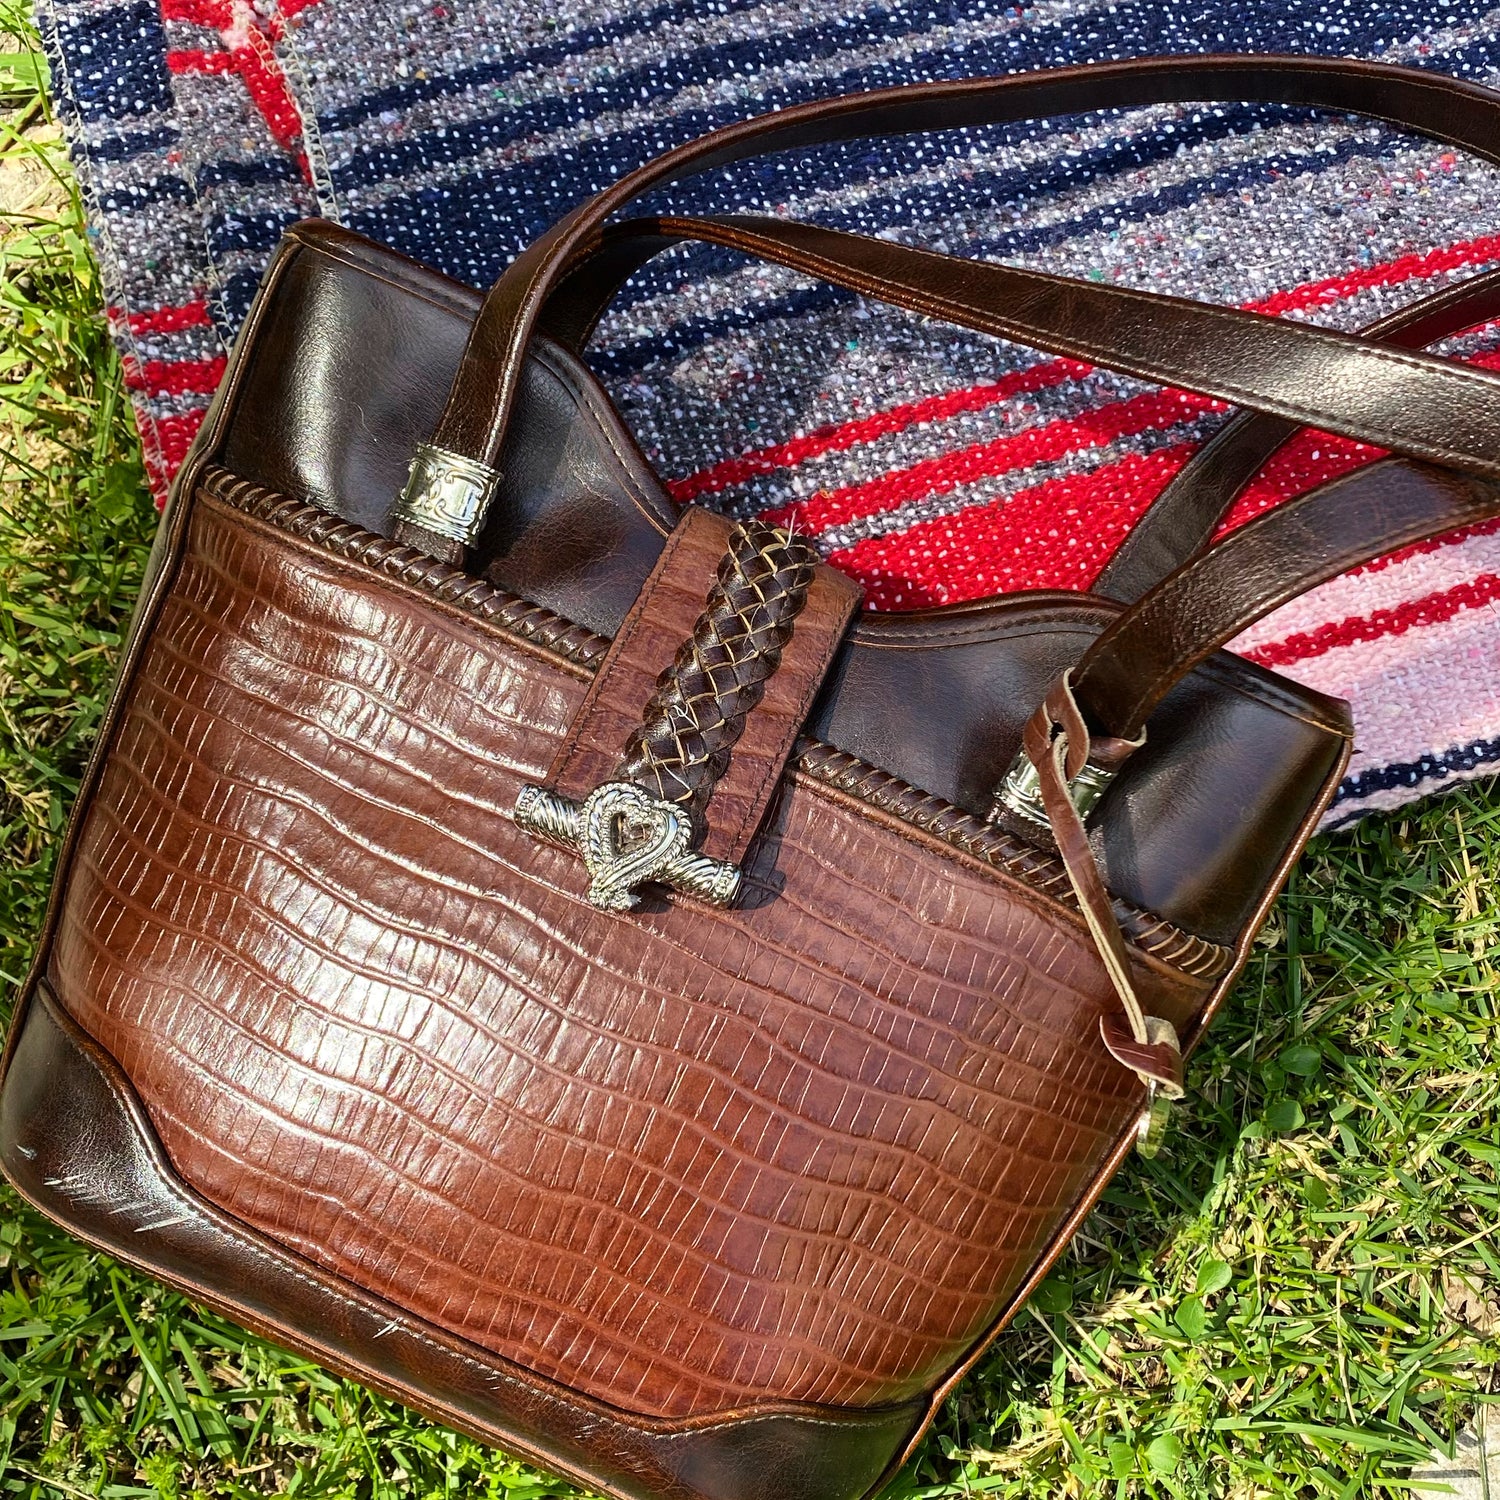 Brown Brighton tote style purse